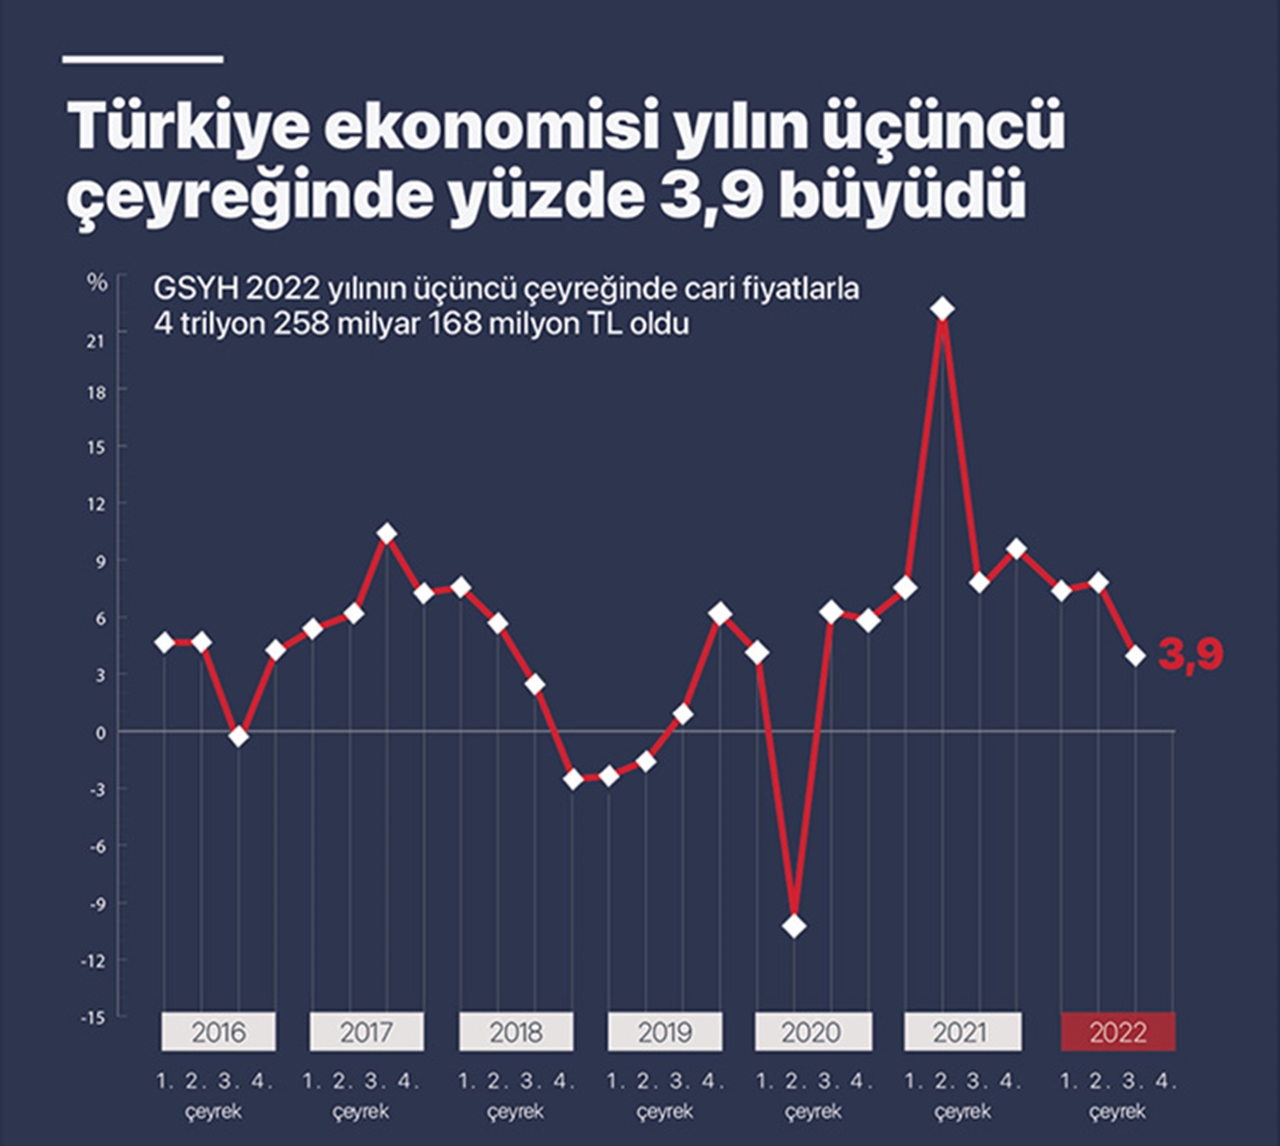 Türkiye ekonomisi üçüncü çeyrekte yüzde 3,9 büyüdü – Bursa Haber – Bursa Haberleri